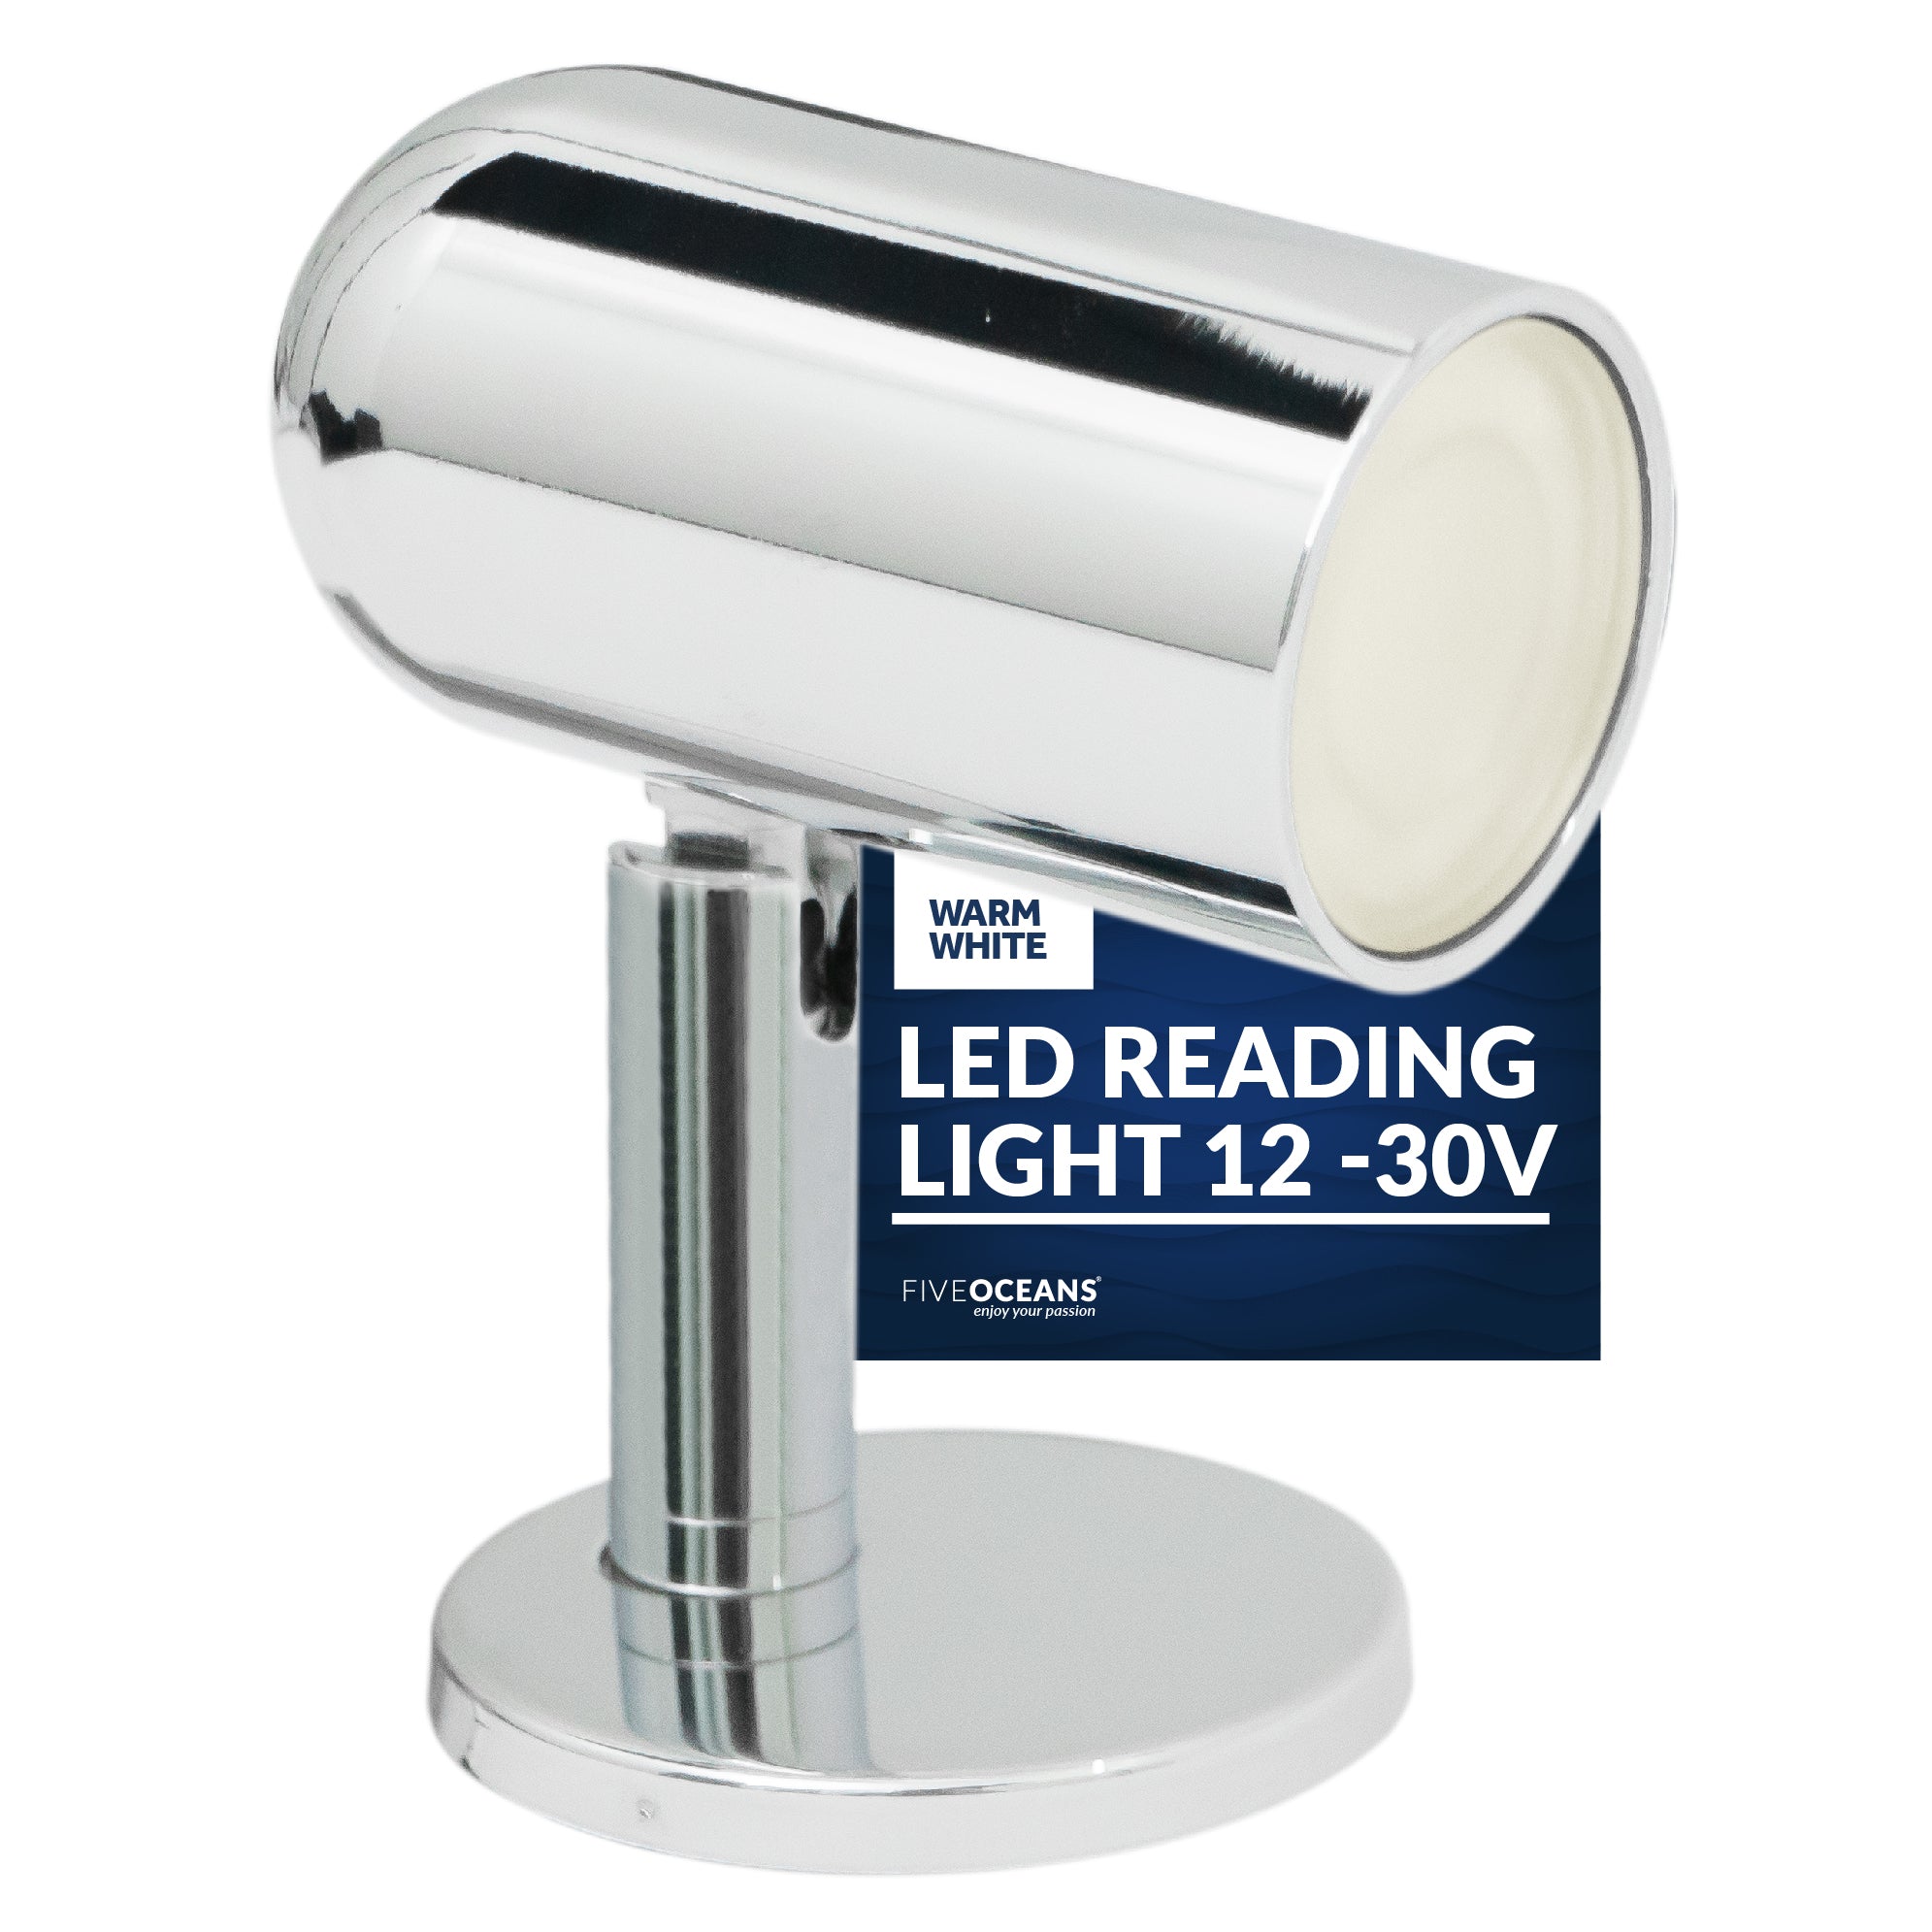 LED Reading Light, 12-30V, Warm White - FO3733